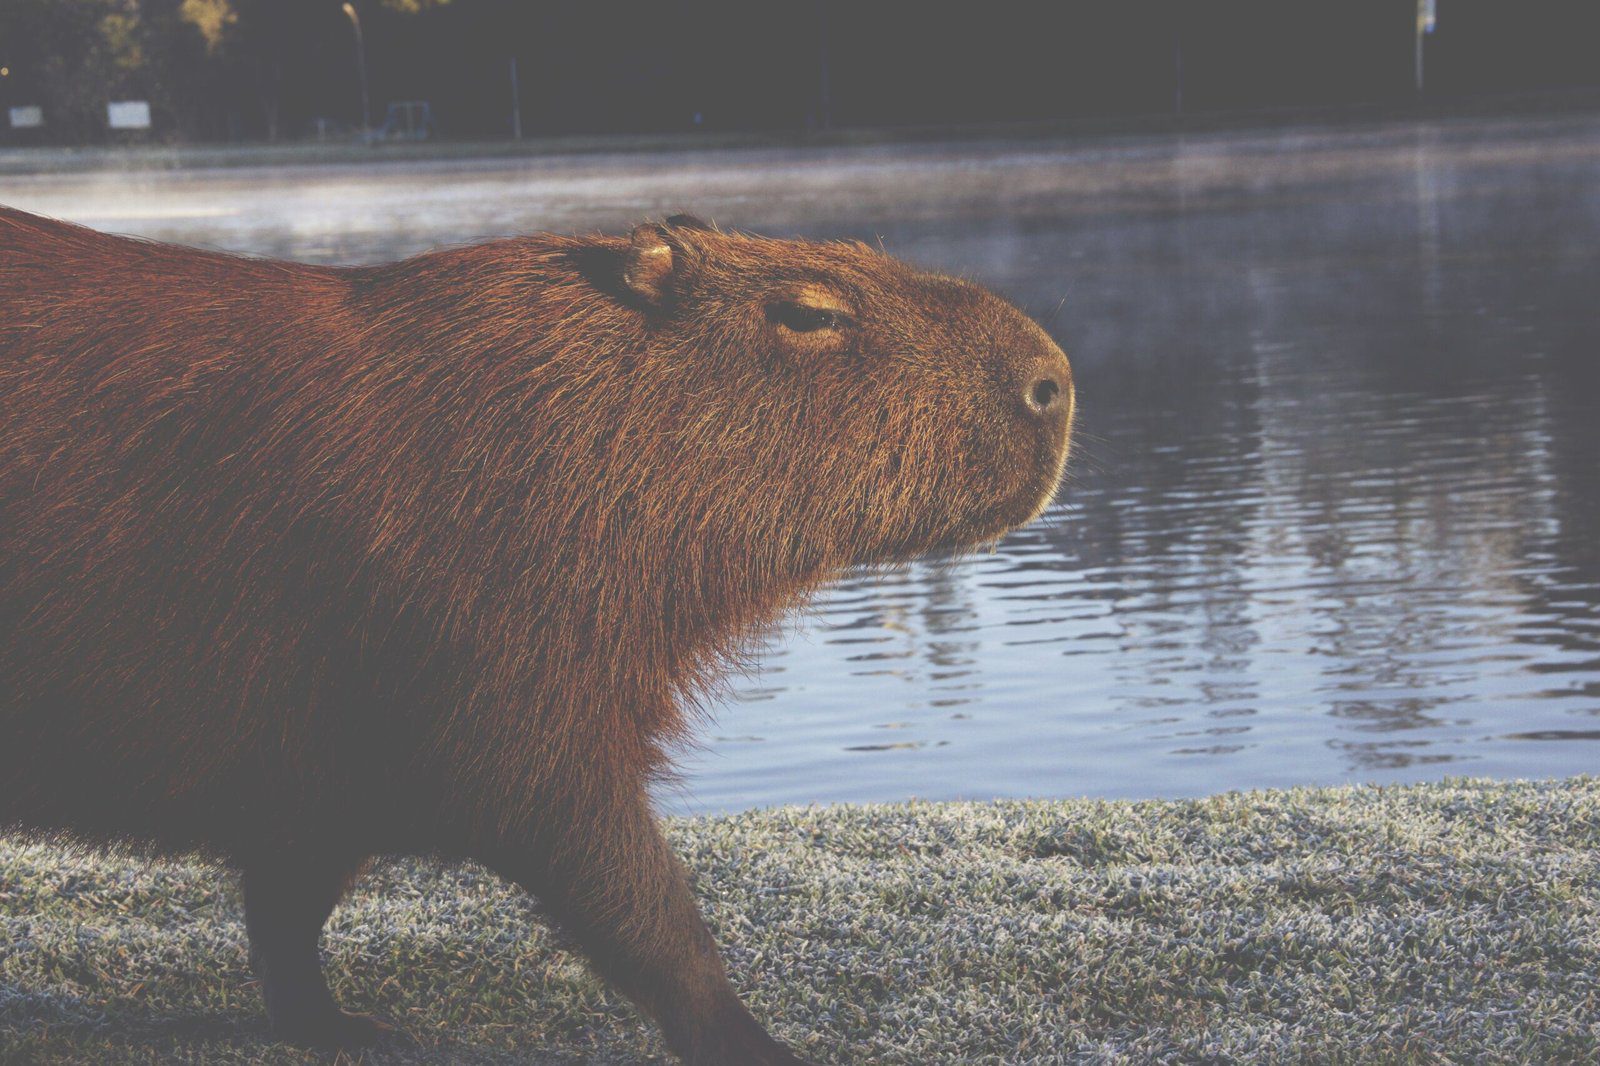 The Adorable Capybara: A Picture Showcase